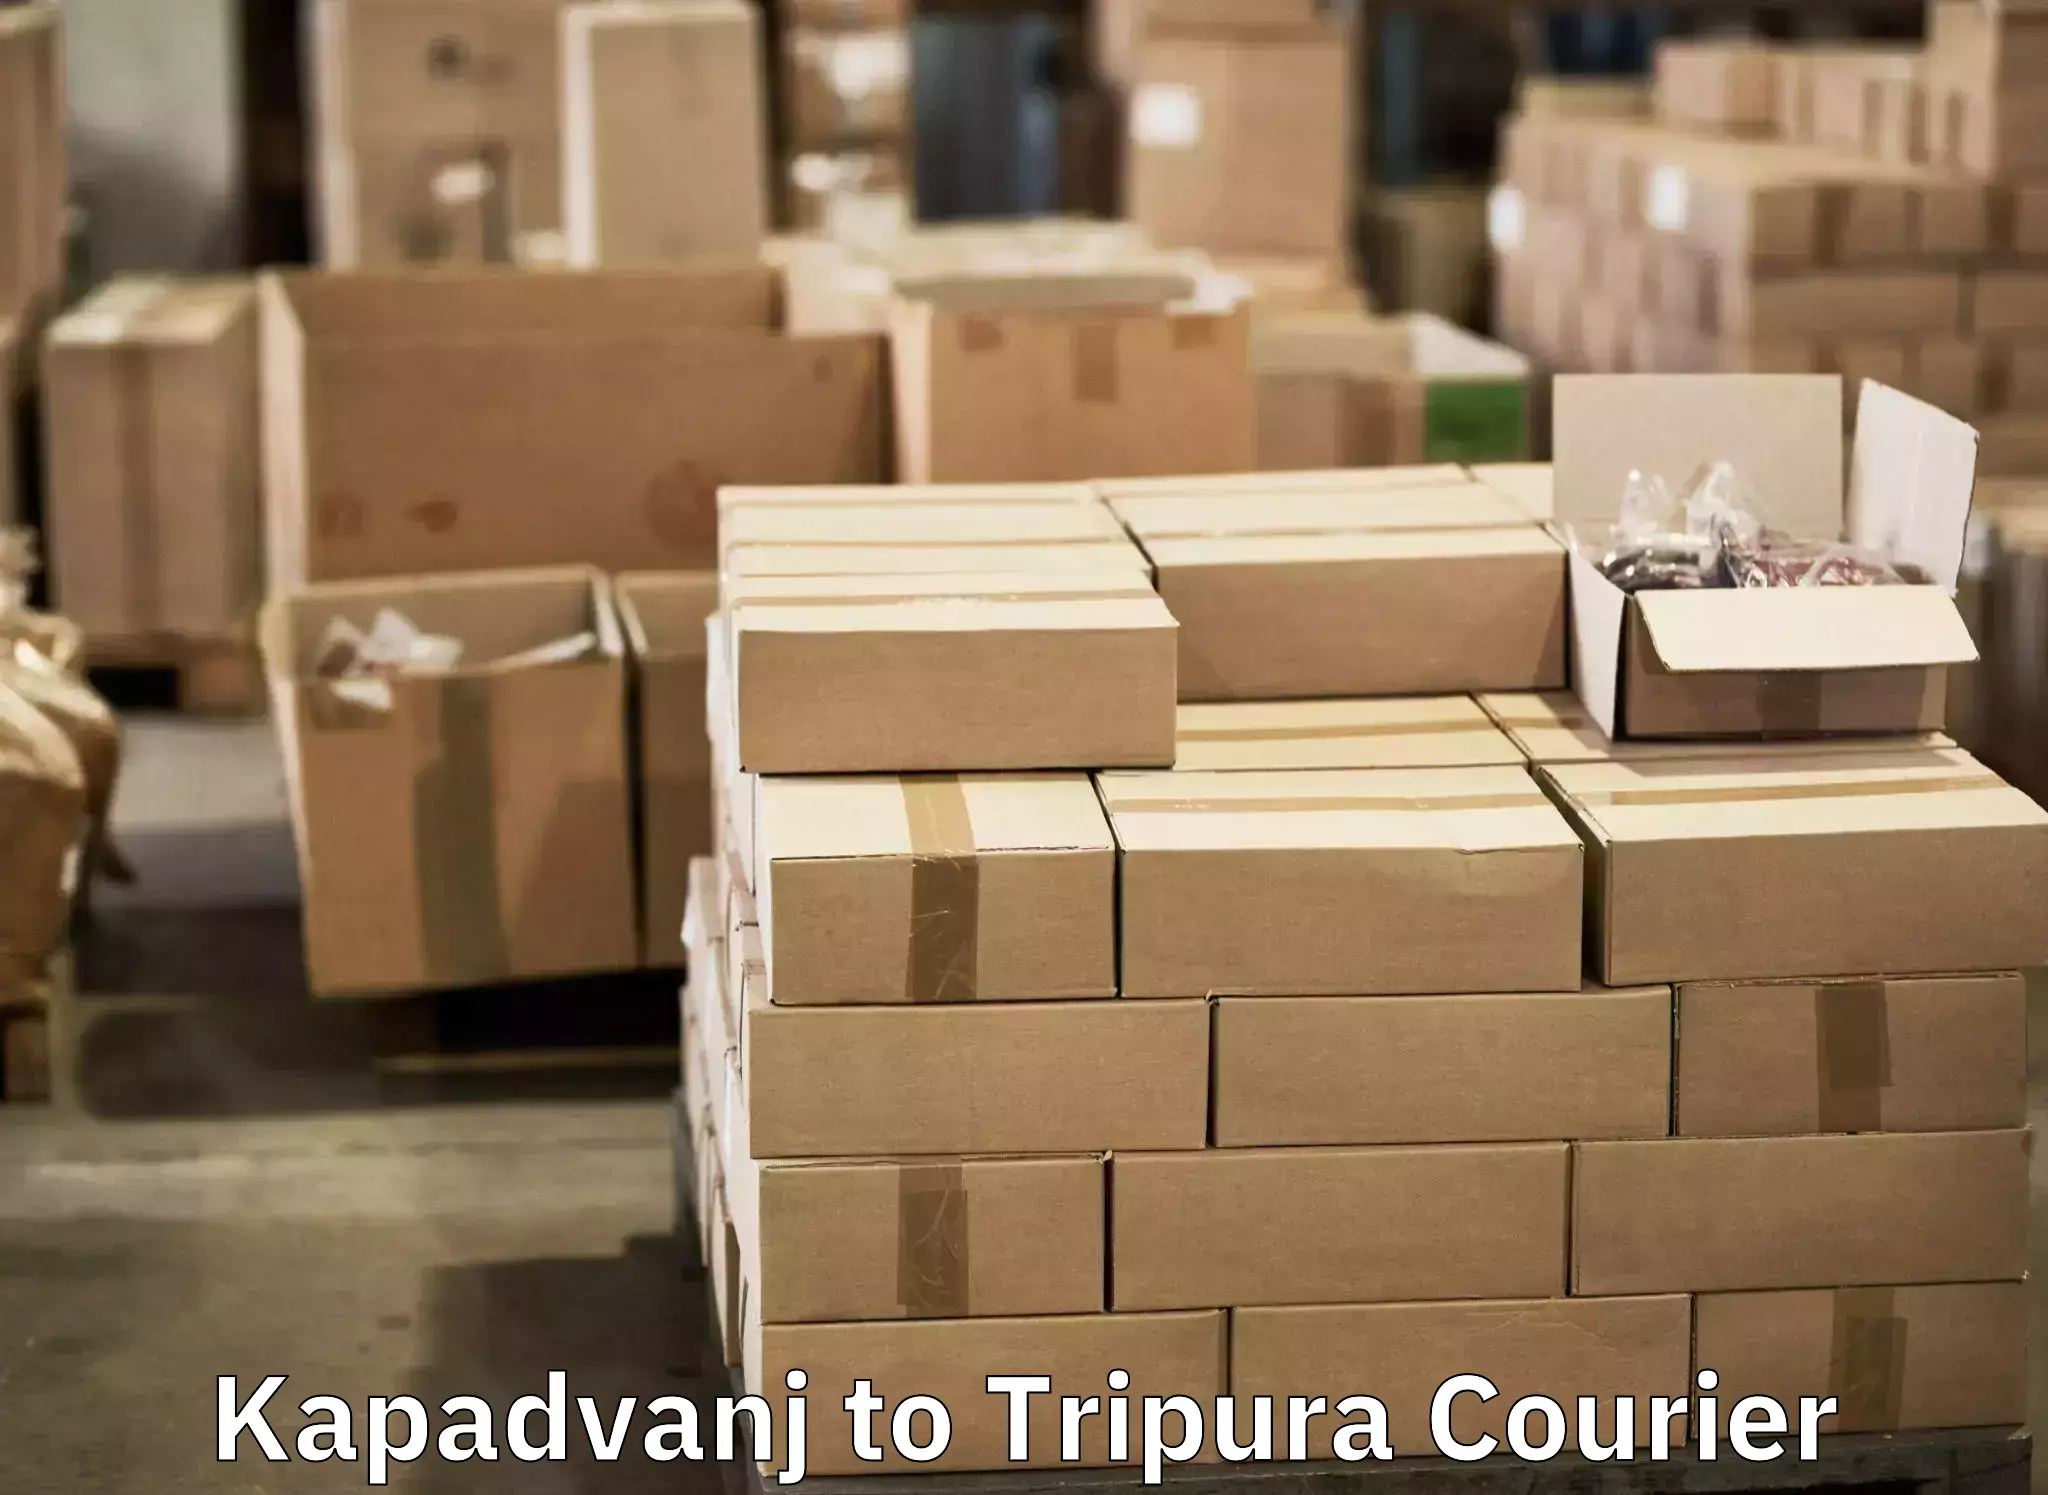 Express baggage shipping Kapadvanj to Udaipur Tripura